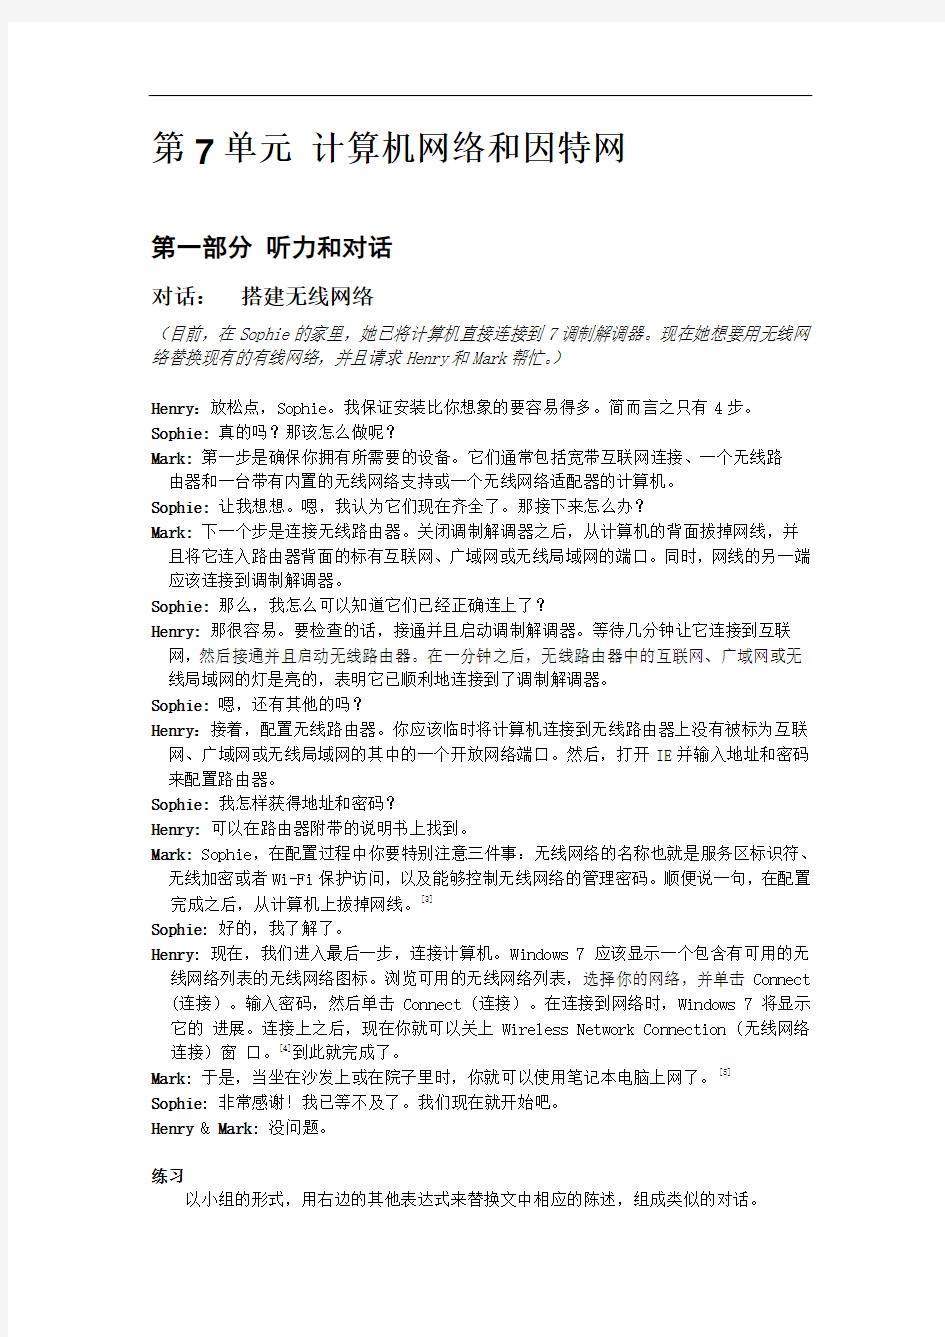 大学实用计算机英语教程第2版翻译机工版7_中文-1-1